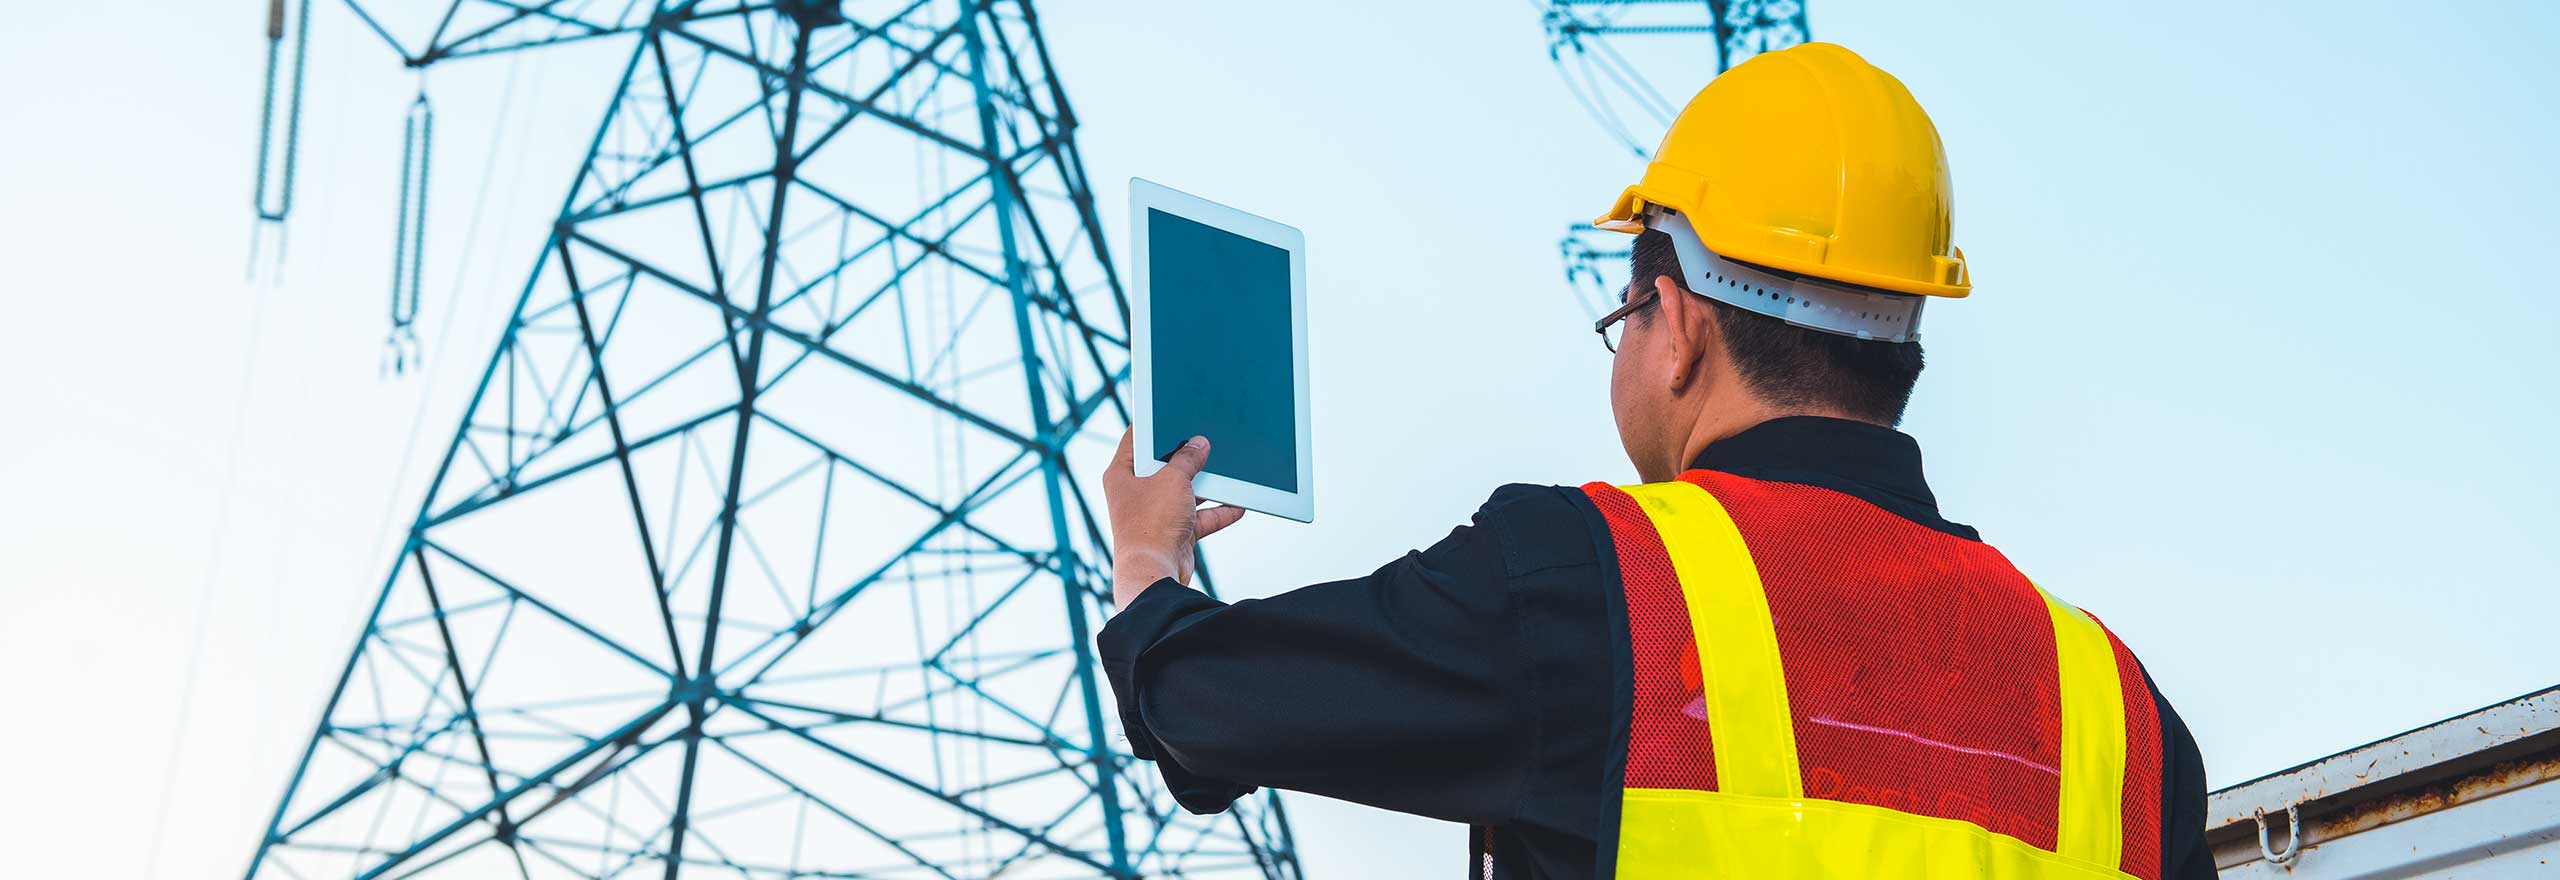 Ingeniero eléctrico con casco sosteniendo una tableta en una torre de alta tensión.